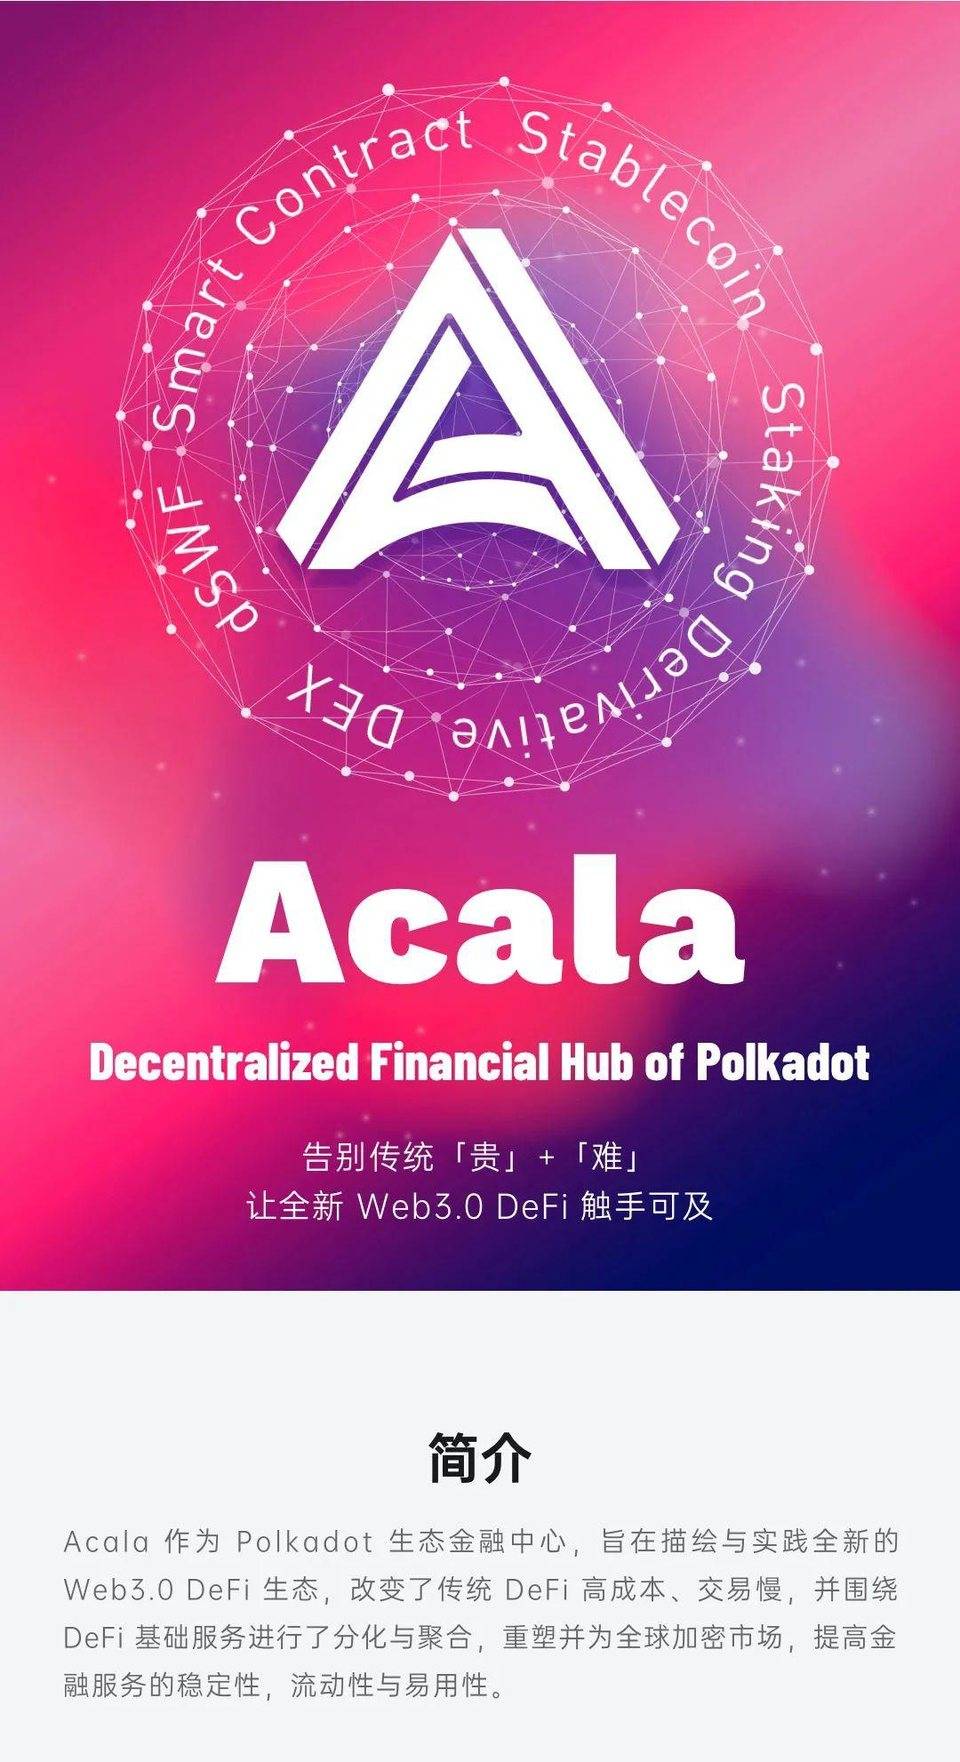 图解波卡生态 DeFi 协议 Acala 2020 进展：产品、社区、技术与融资等